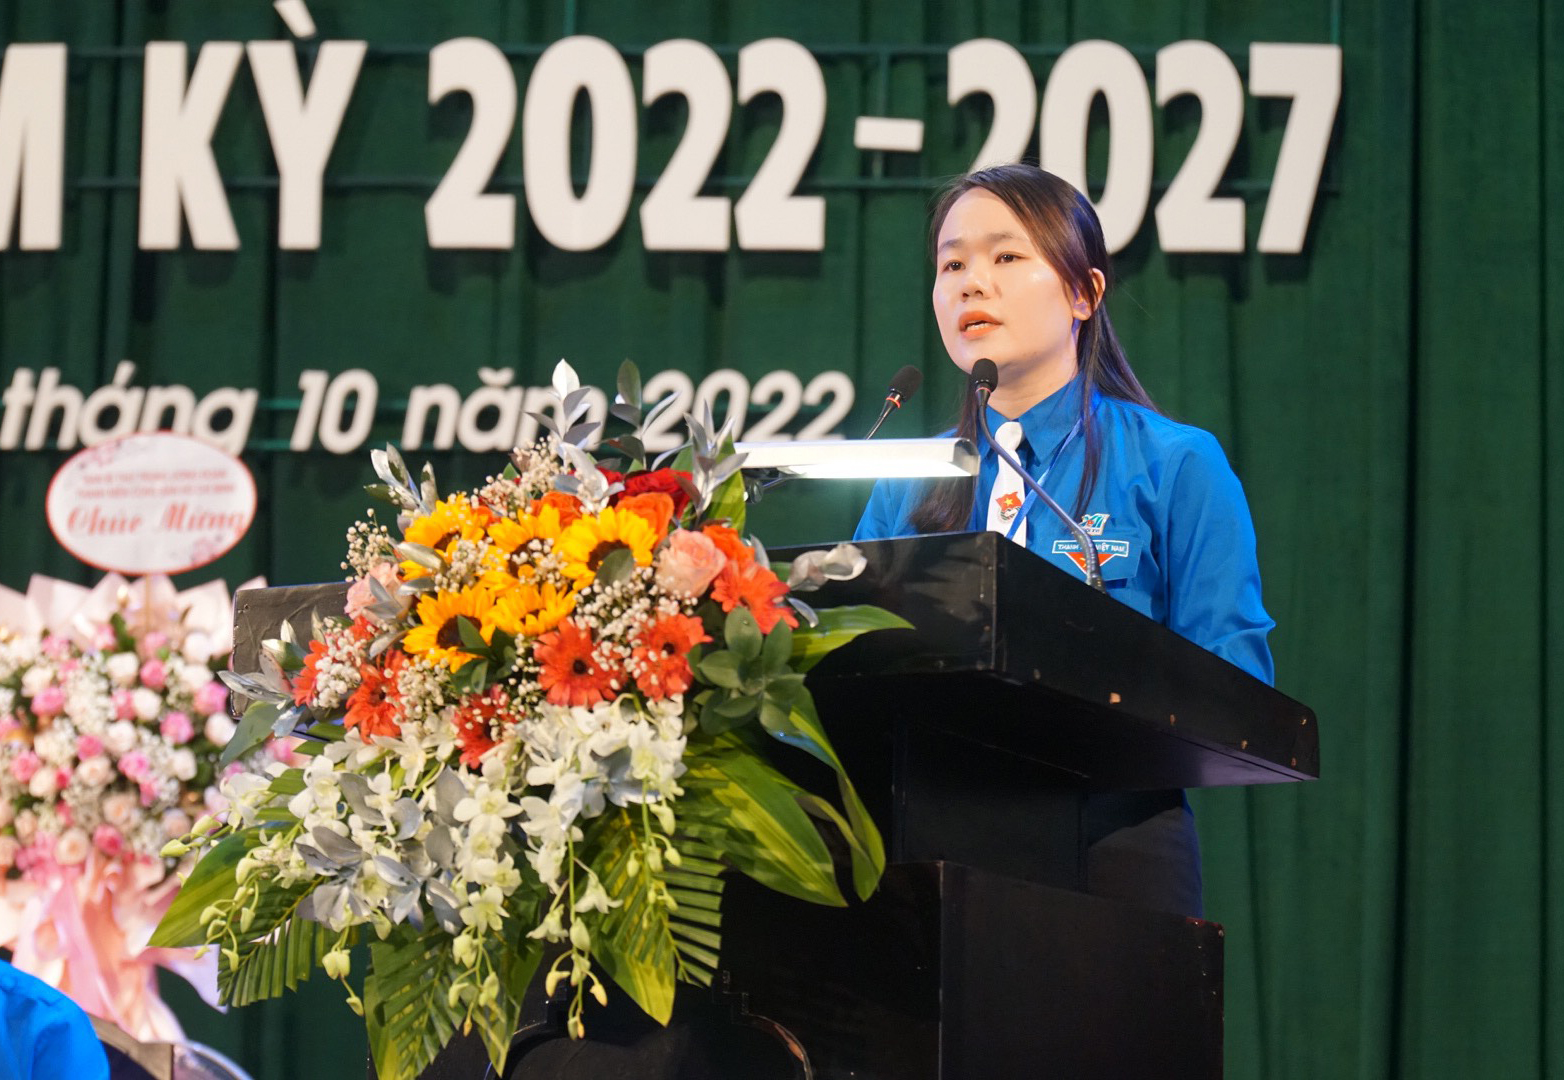 Tỉnh đoàn Thừa Thiên - Huế tổ chức Đại hội lần thứ XVI-3